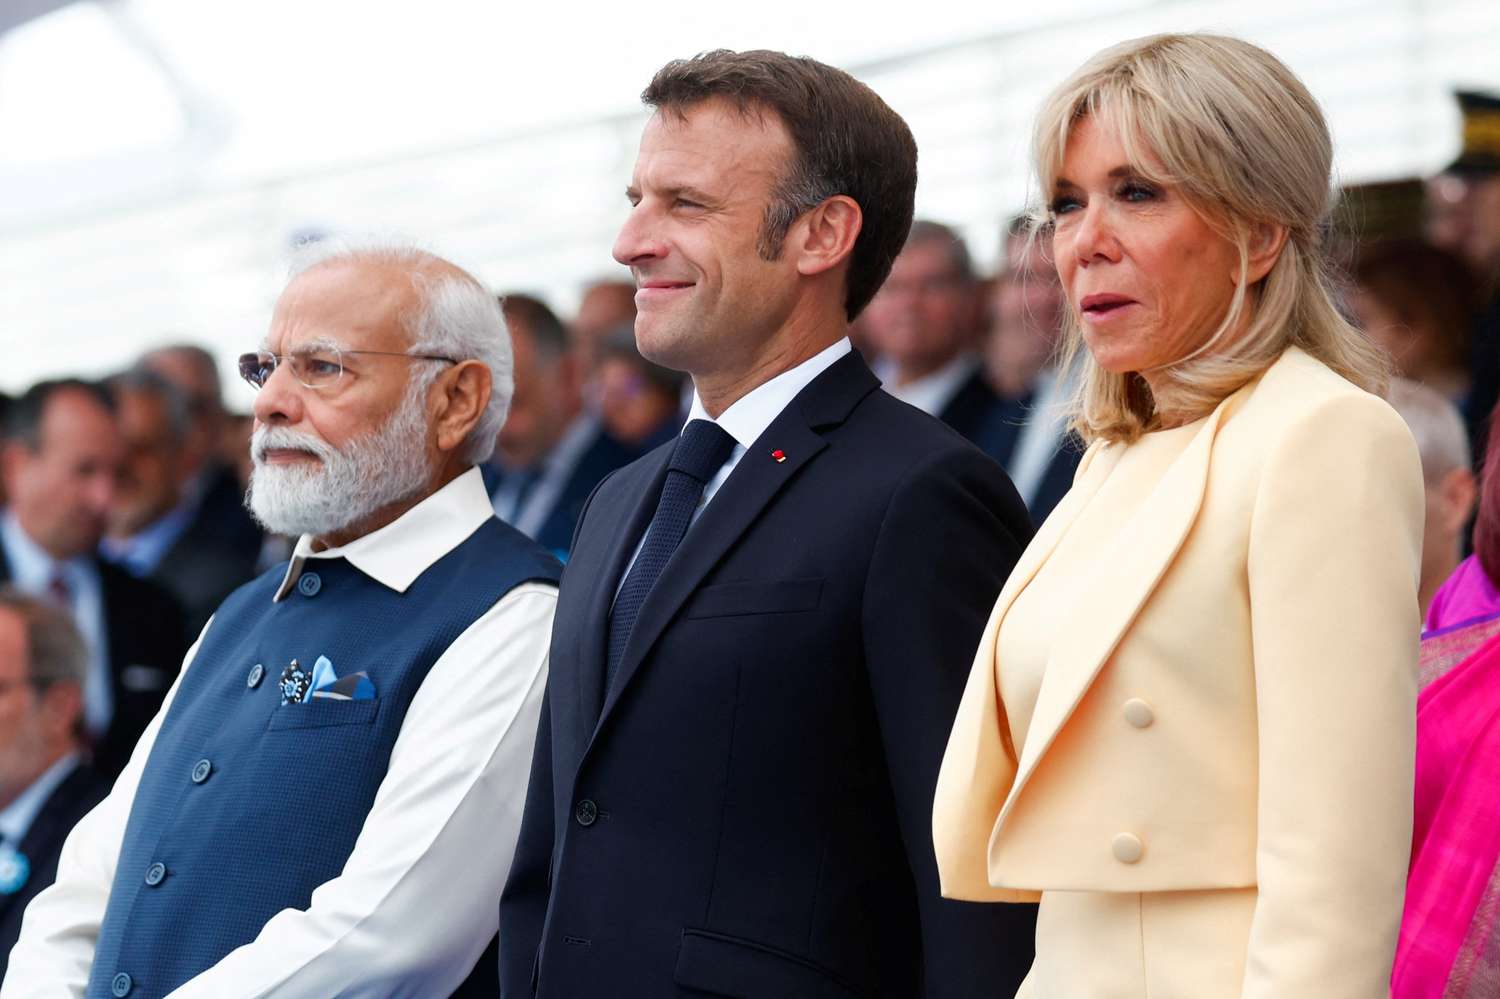 Emmanuel Macron destacó el “compromiso” de los franceses al celebrar el Día Nacional